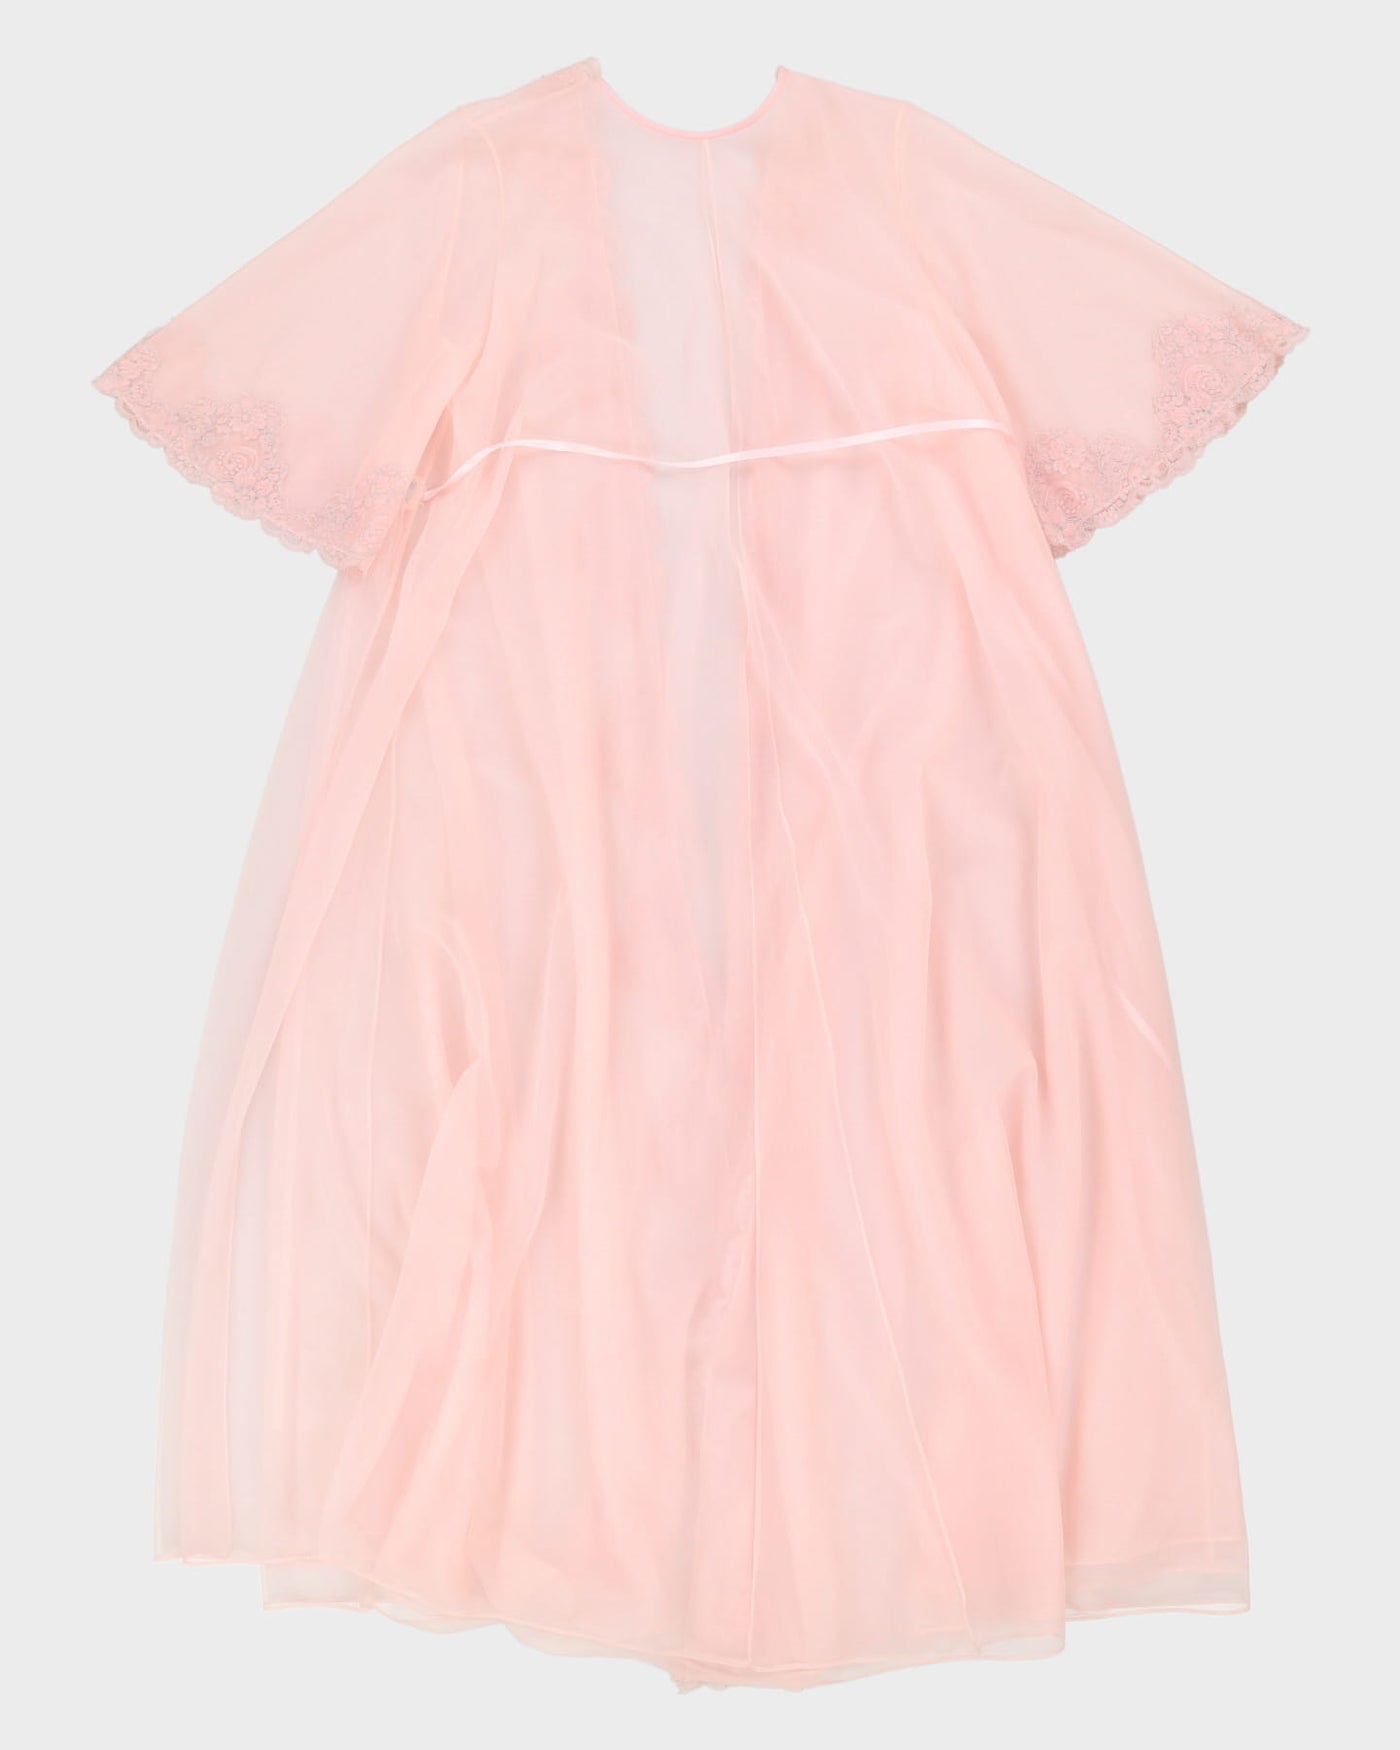 Vintage 1970s Pink Peignoir Dressing Gown - M / L